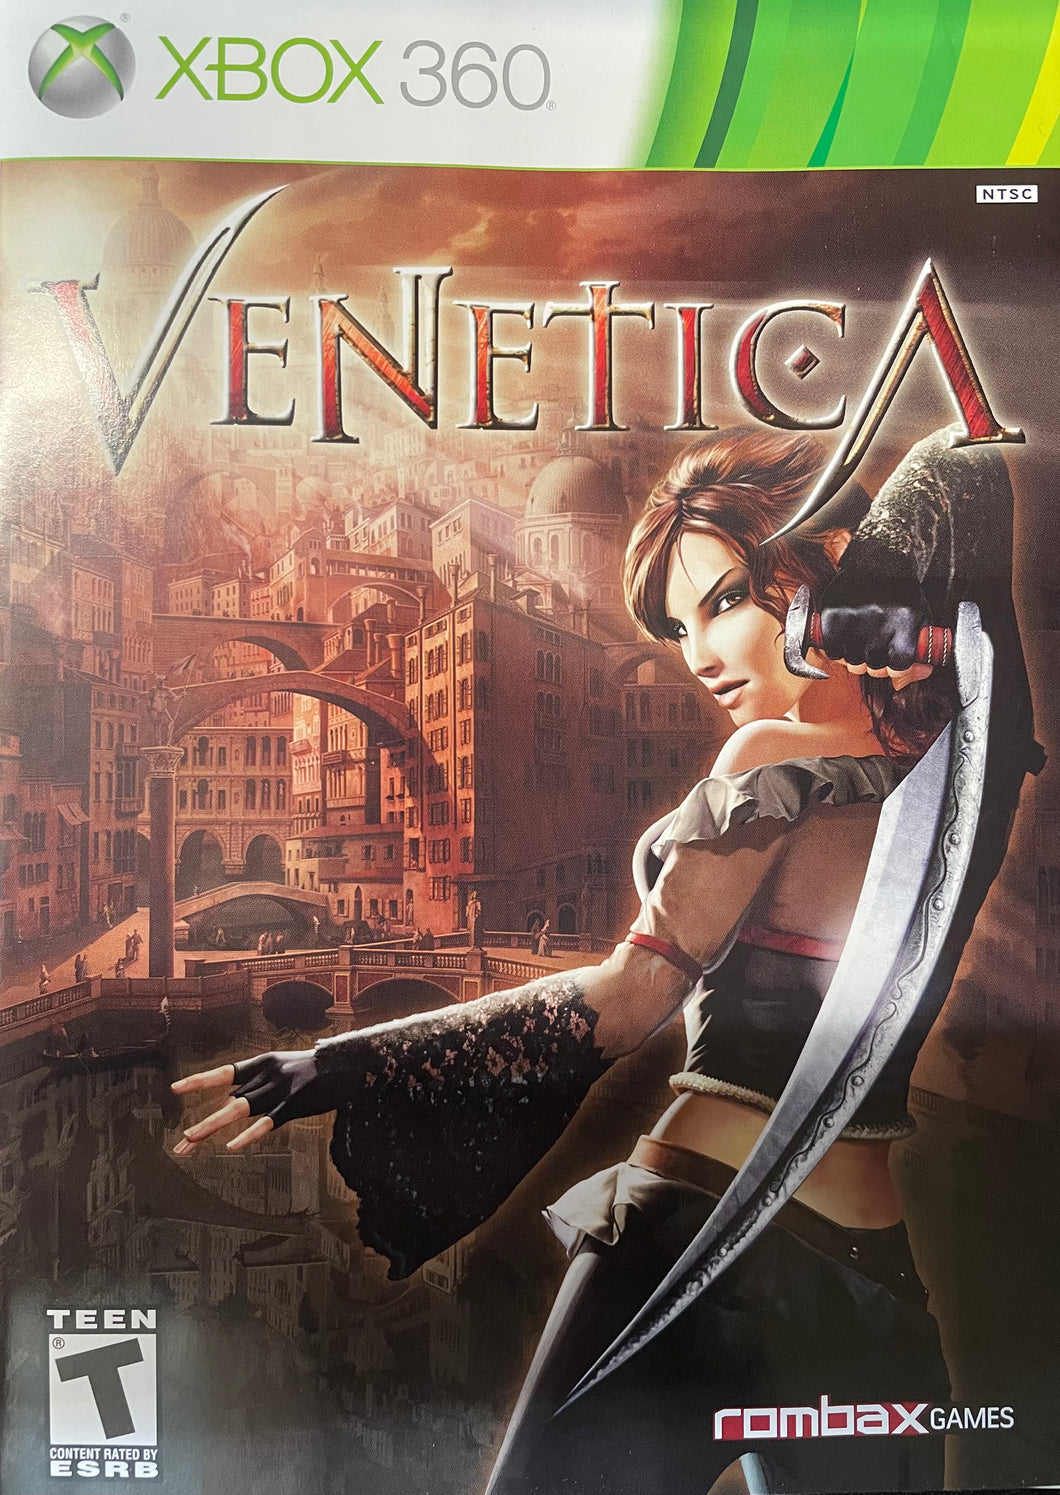 Venetica Xbox 360